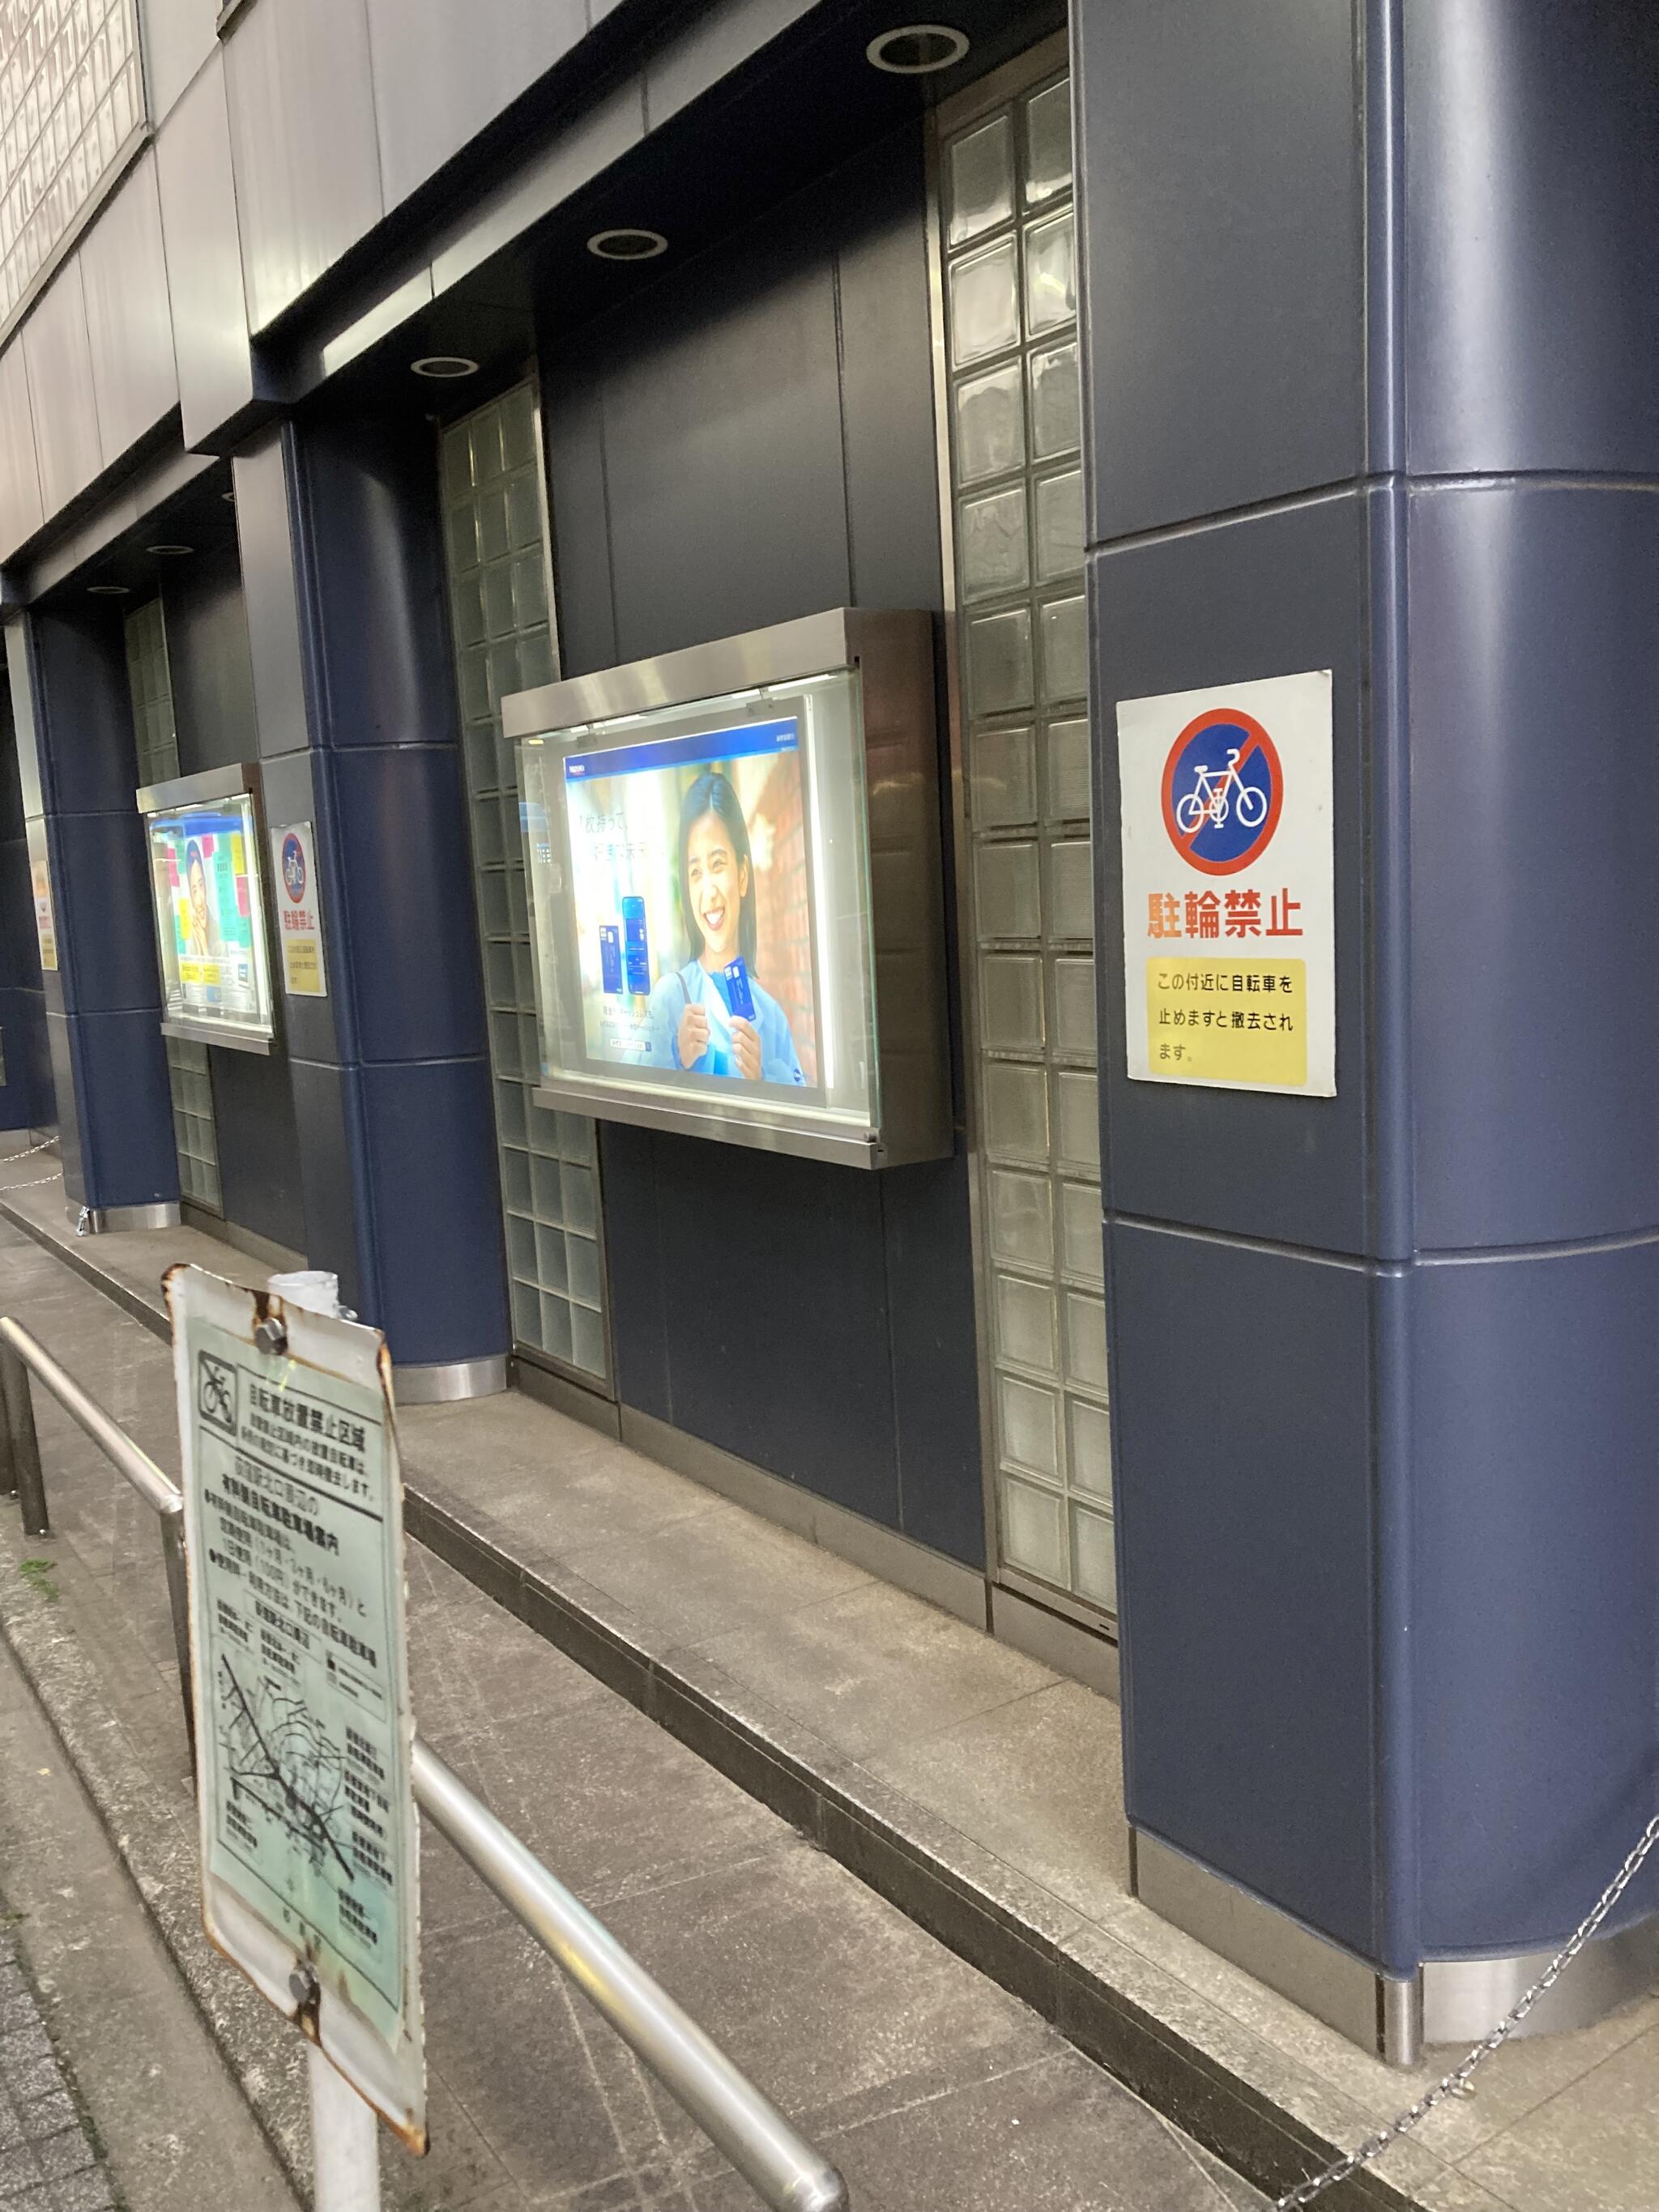 みずほ銀行 荻窪支店 - 杉並区天沼/銀行 | Yahoo!マップ